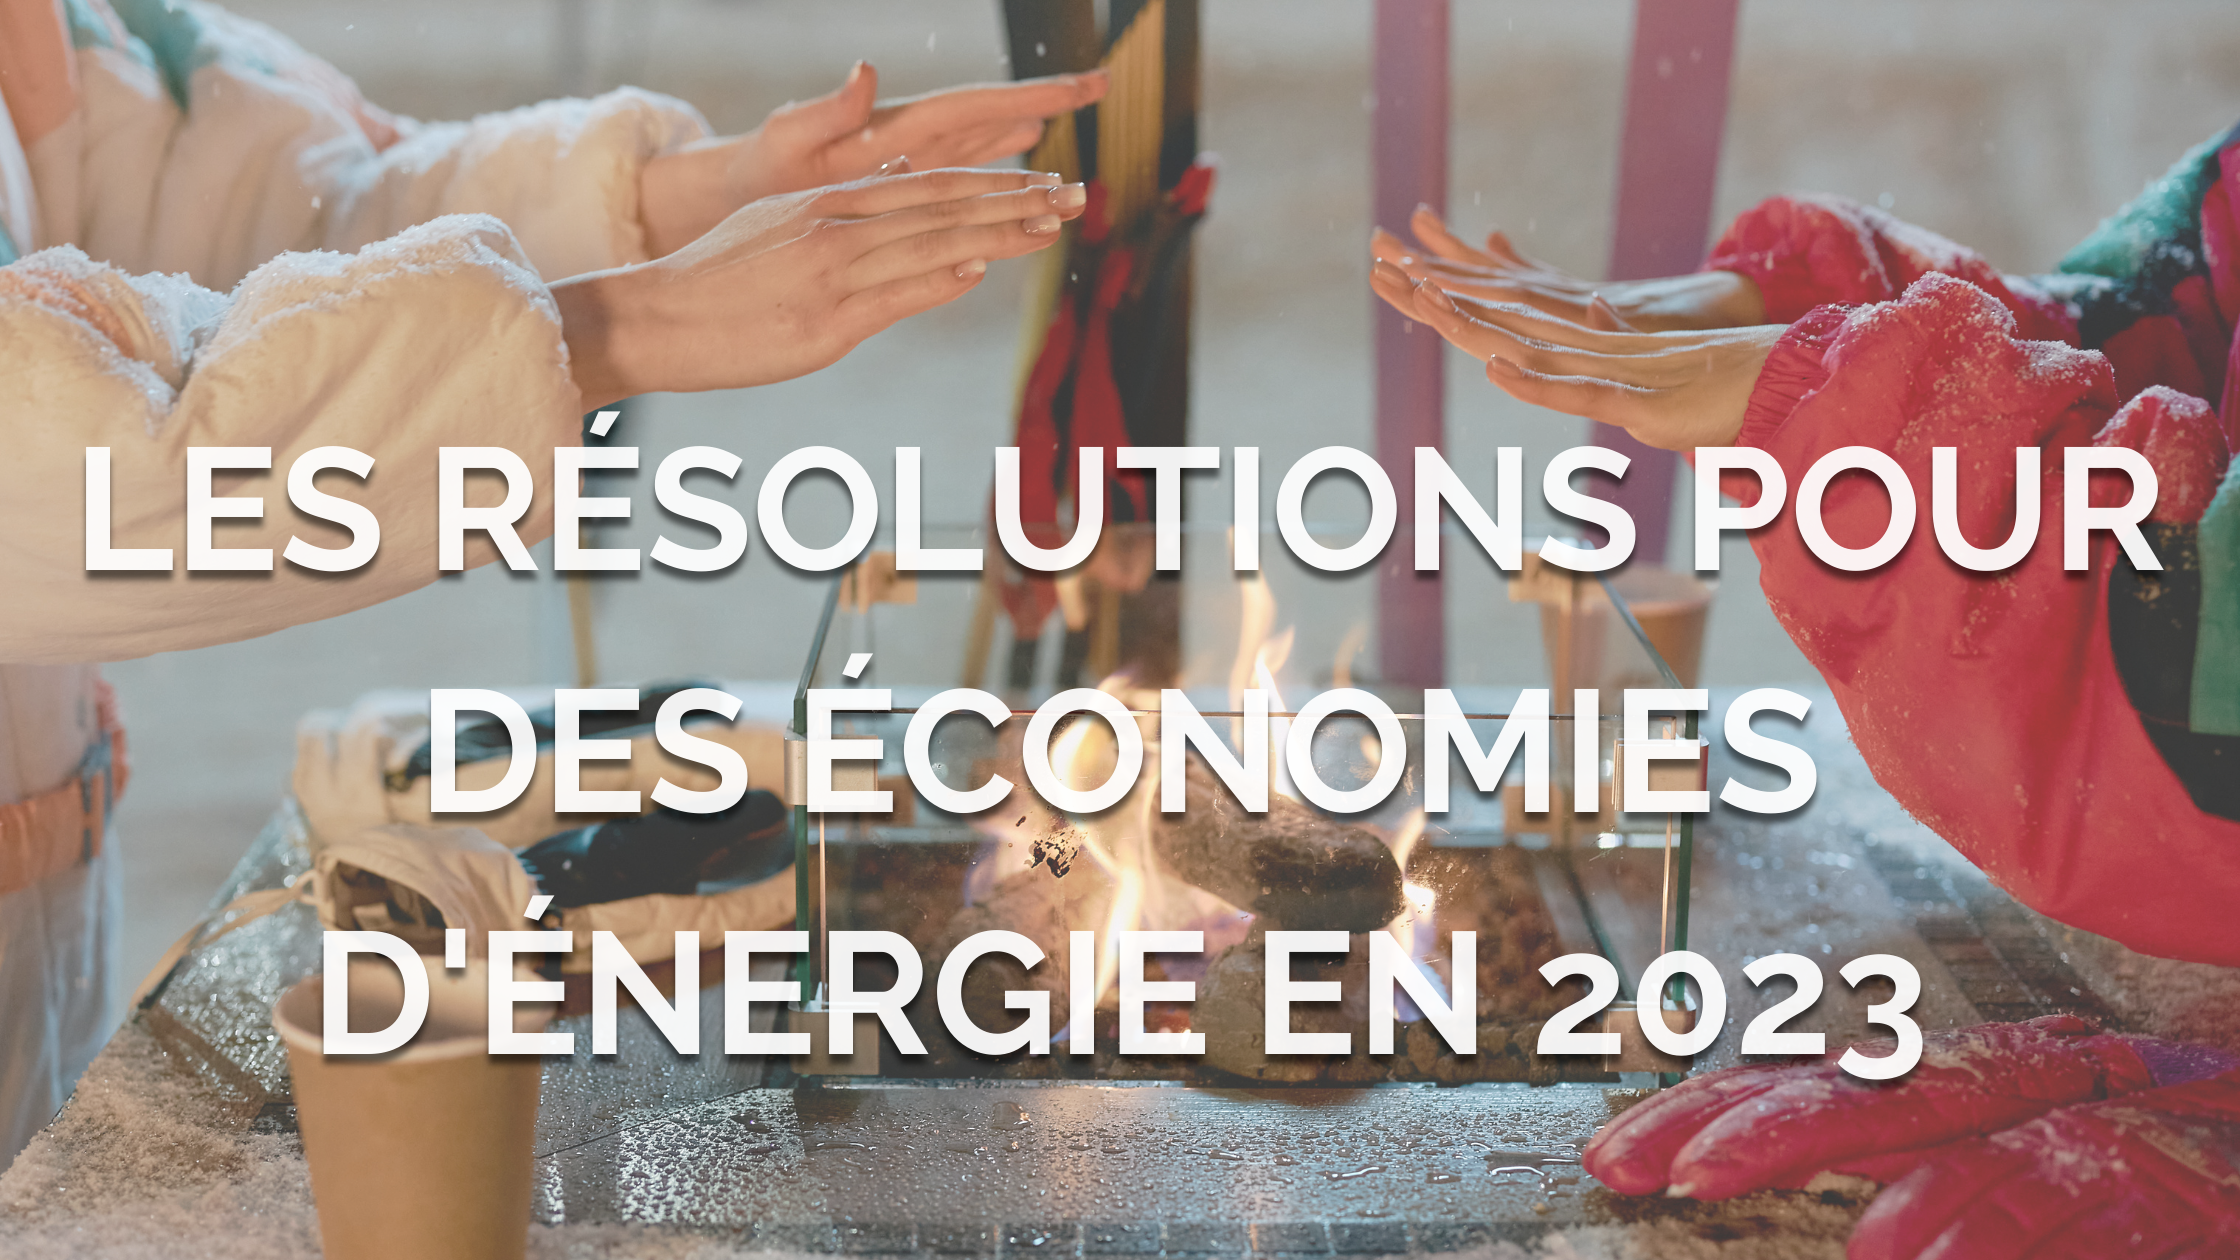 Les résolutions pour des économies d’énergie en 2023